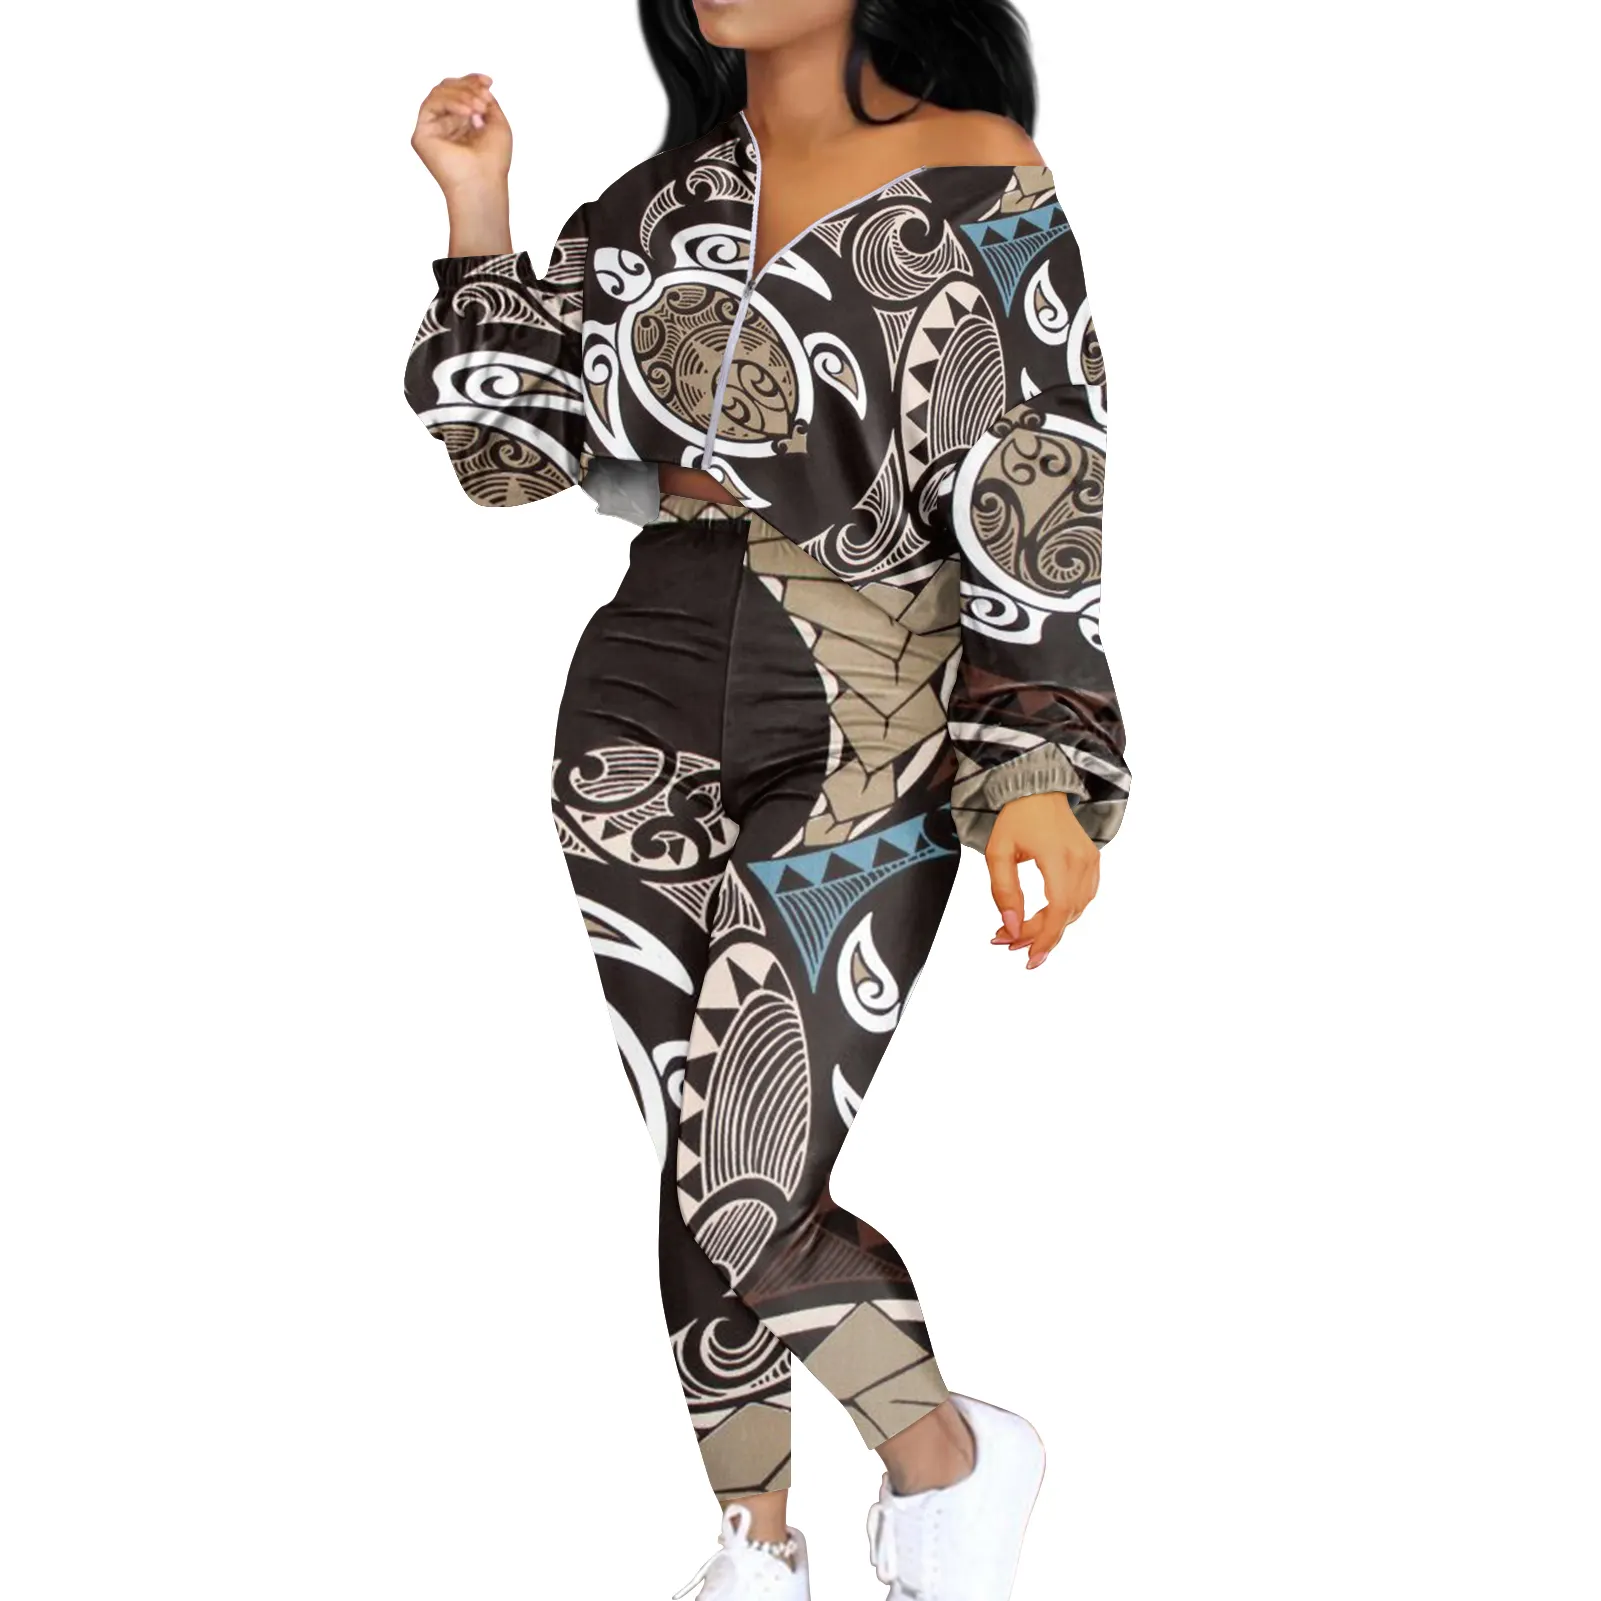 MOQ Personalizado 1 Polinesia Tribal estampado personalizado mujeres Crop Tops ropa de talla grande de manga larga traje femenino chándal 2 uds conjunto